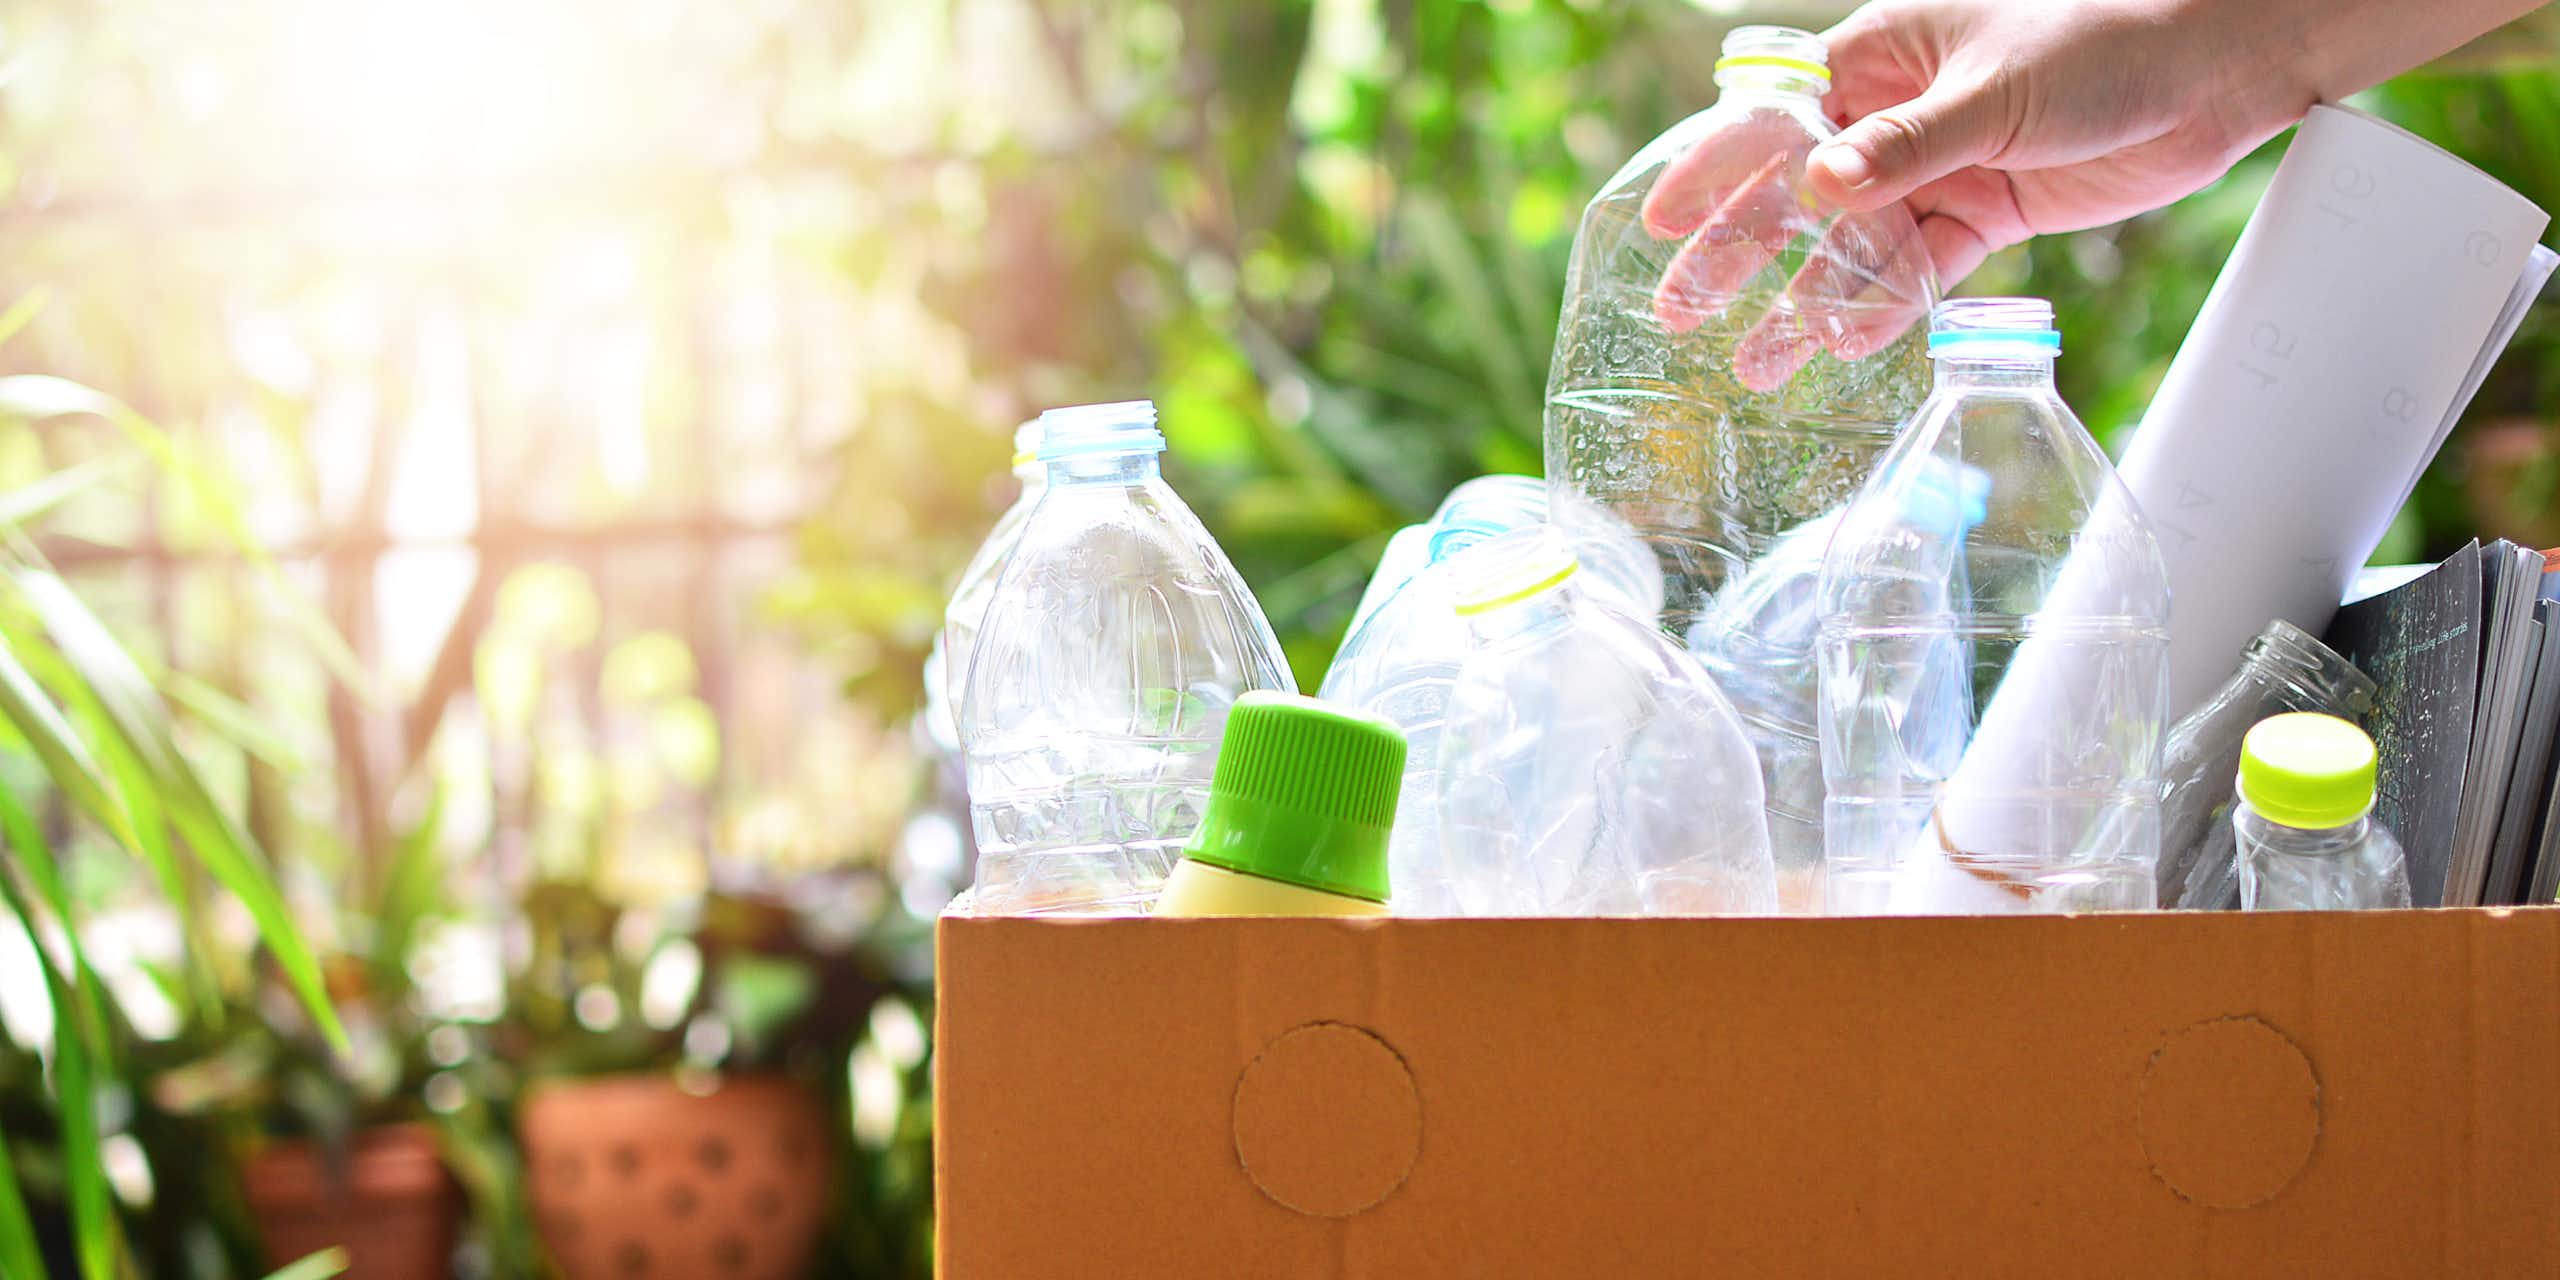 Les citoyens recyclent, mais l’industrie est défaillante et le modèle de consommation, jamais remis en question